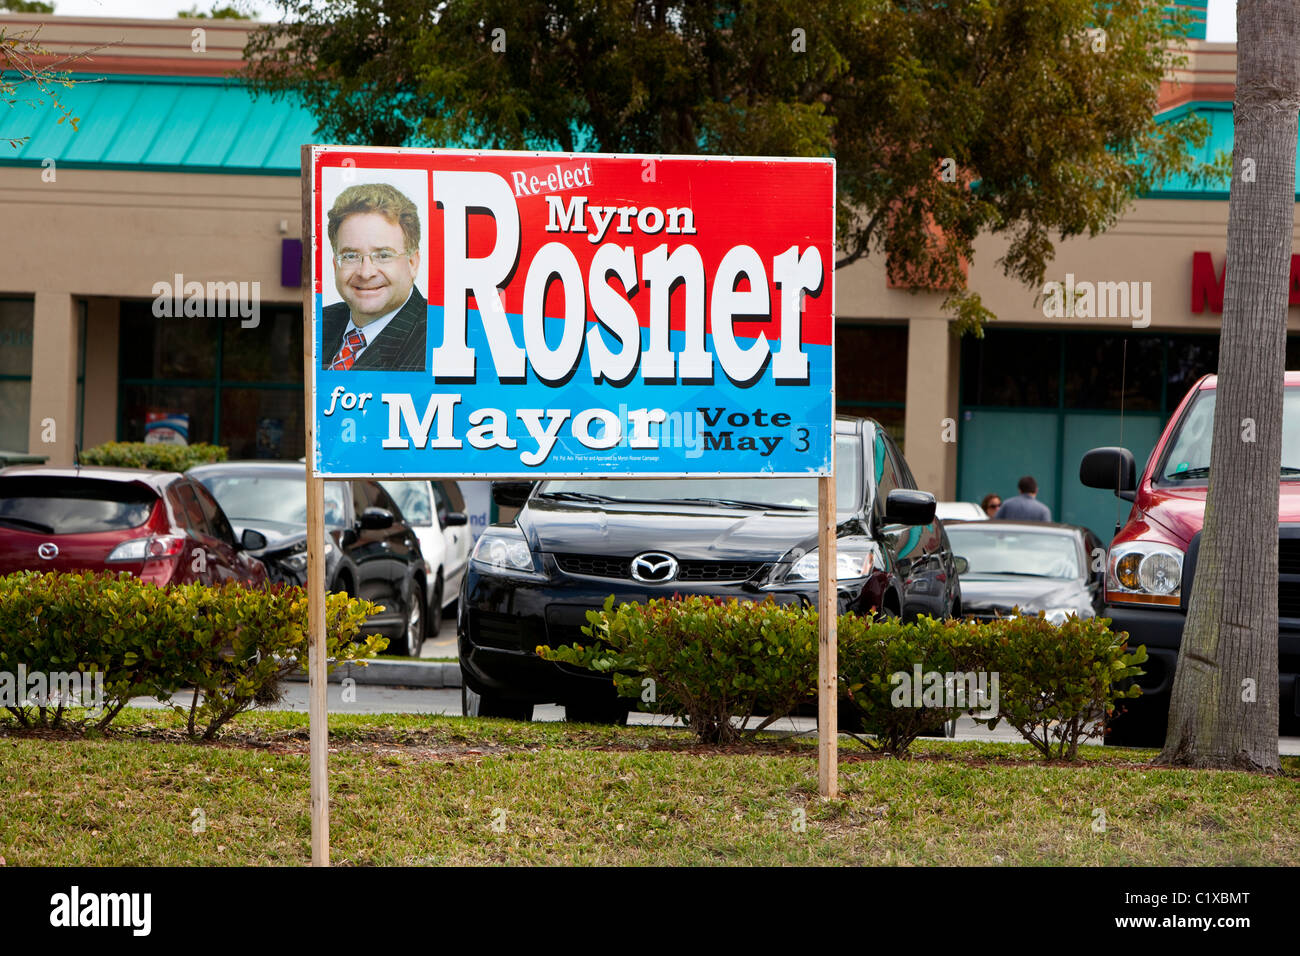 Politician candidate campaign sign, Miami, Florida, USA Stock Photo